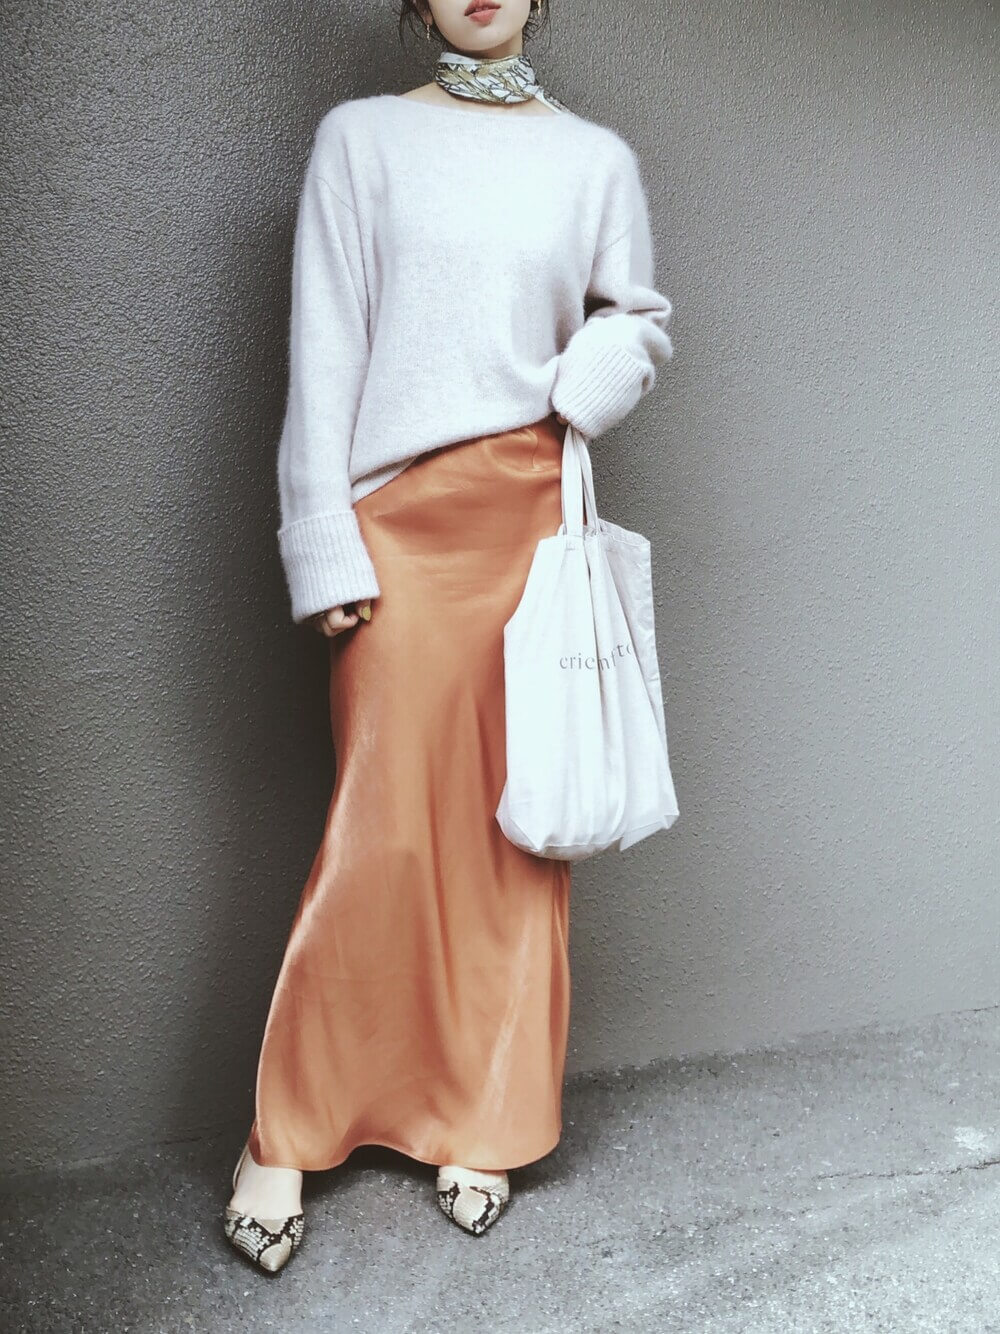 キャンバストートバッグ×白のニット×オレンジのサテンスカート×パイソン柄パンプス×スカーフ